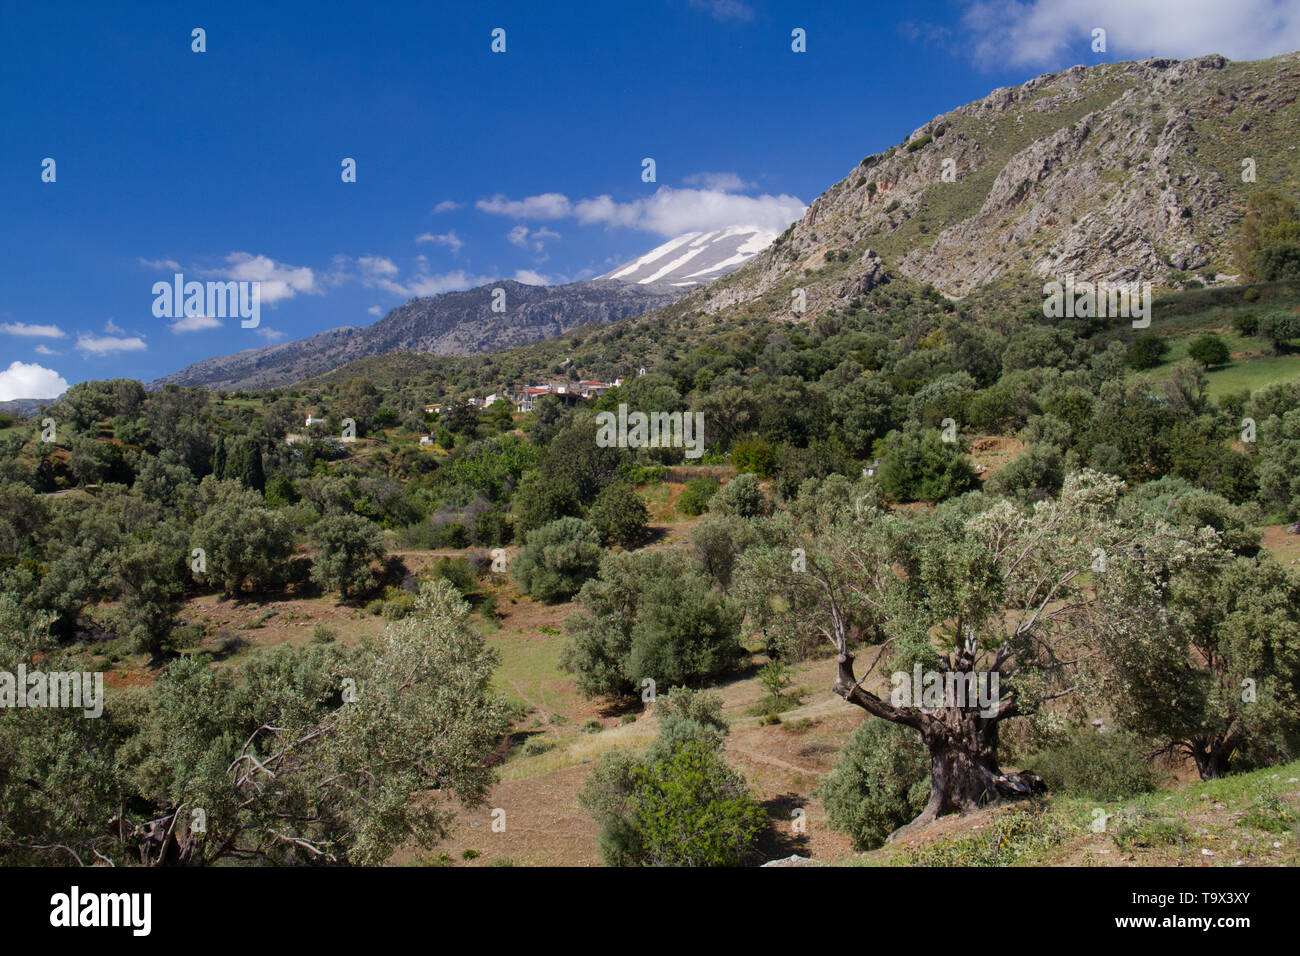 Landschaft auf Kreta, Griechenland: Blick über ein Olivenhain, in der Ferne die schneebedeckten Berge und ein Dorf mit weissen Häusern Stockfoto